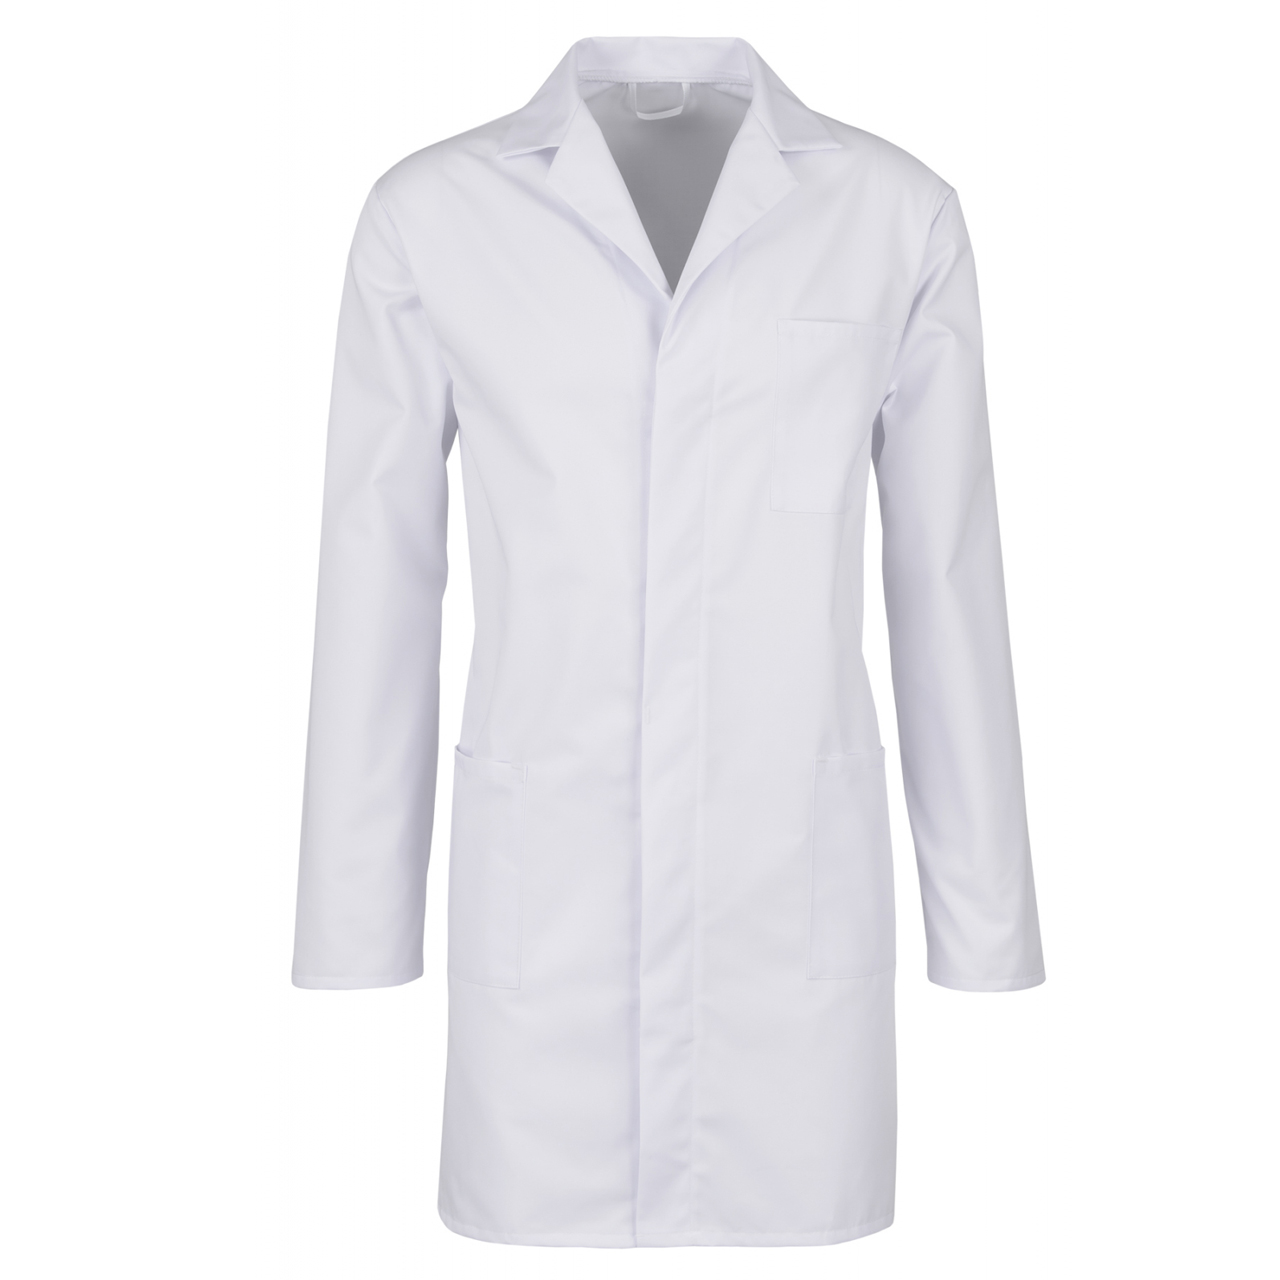 Premium men's lab coat blended fabric 210g/m² BEB® 62